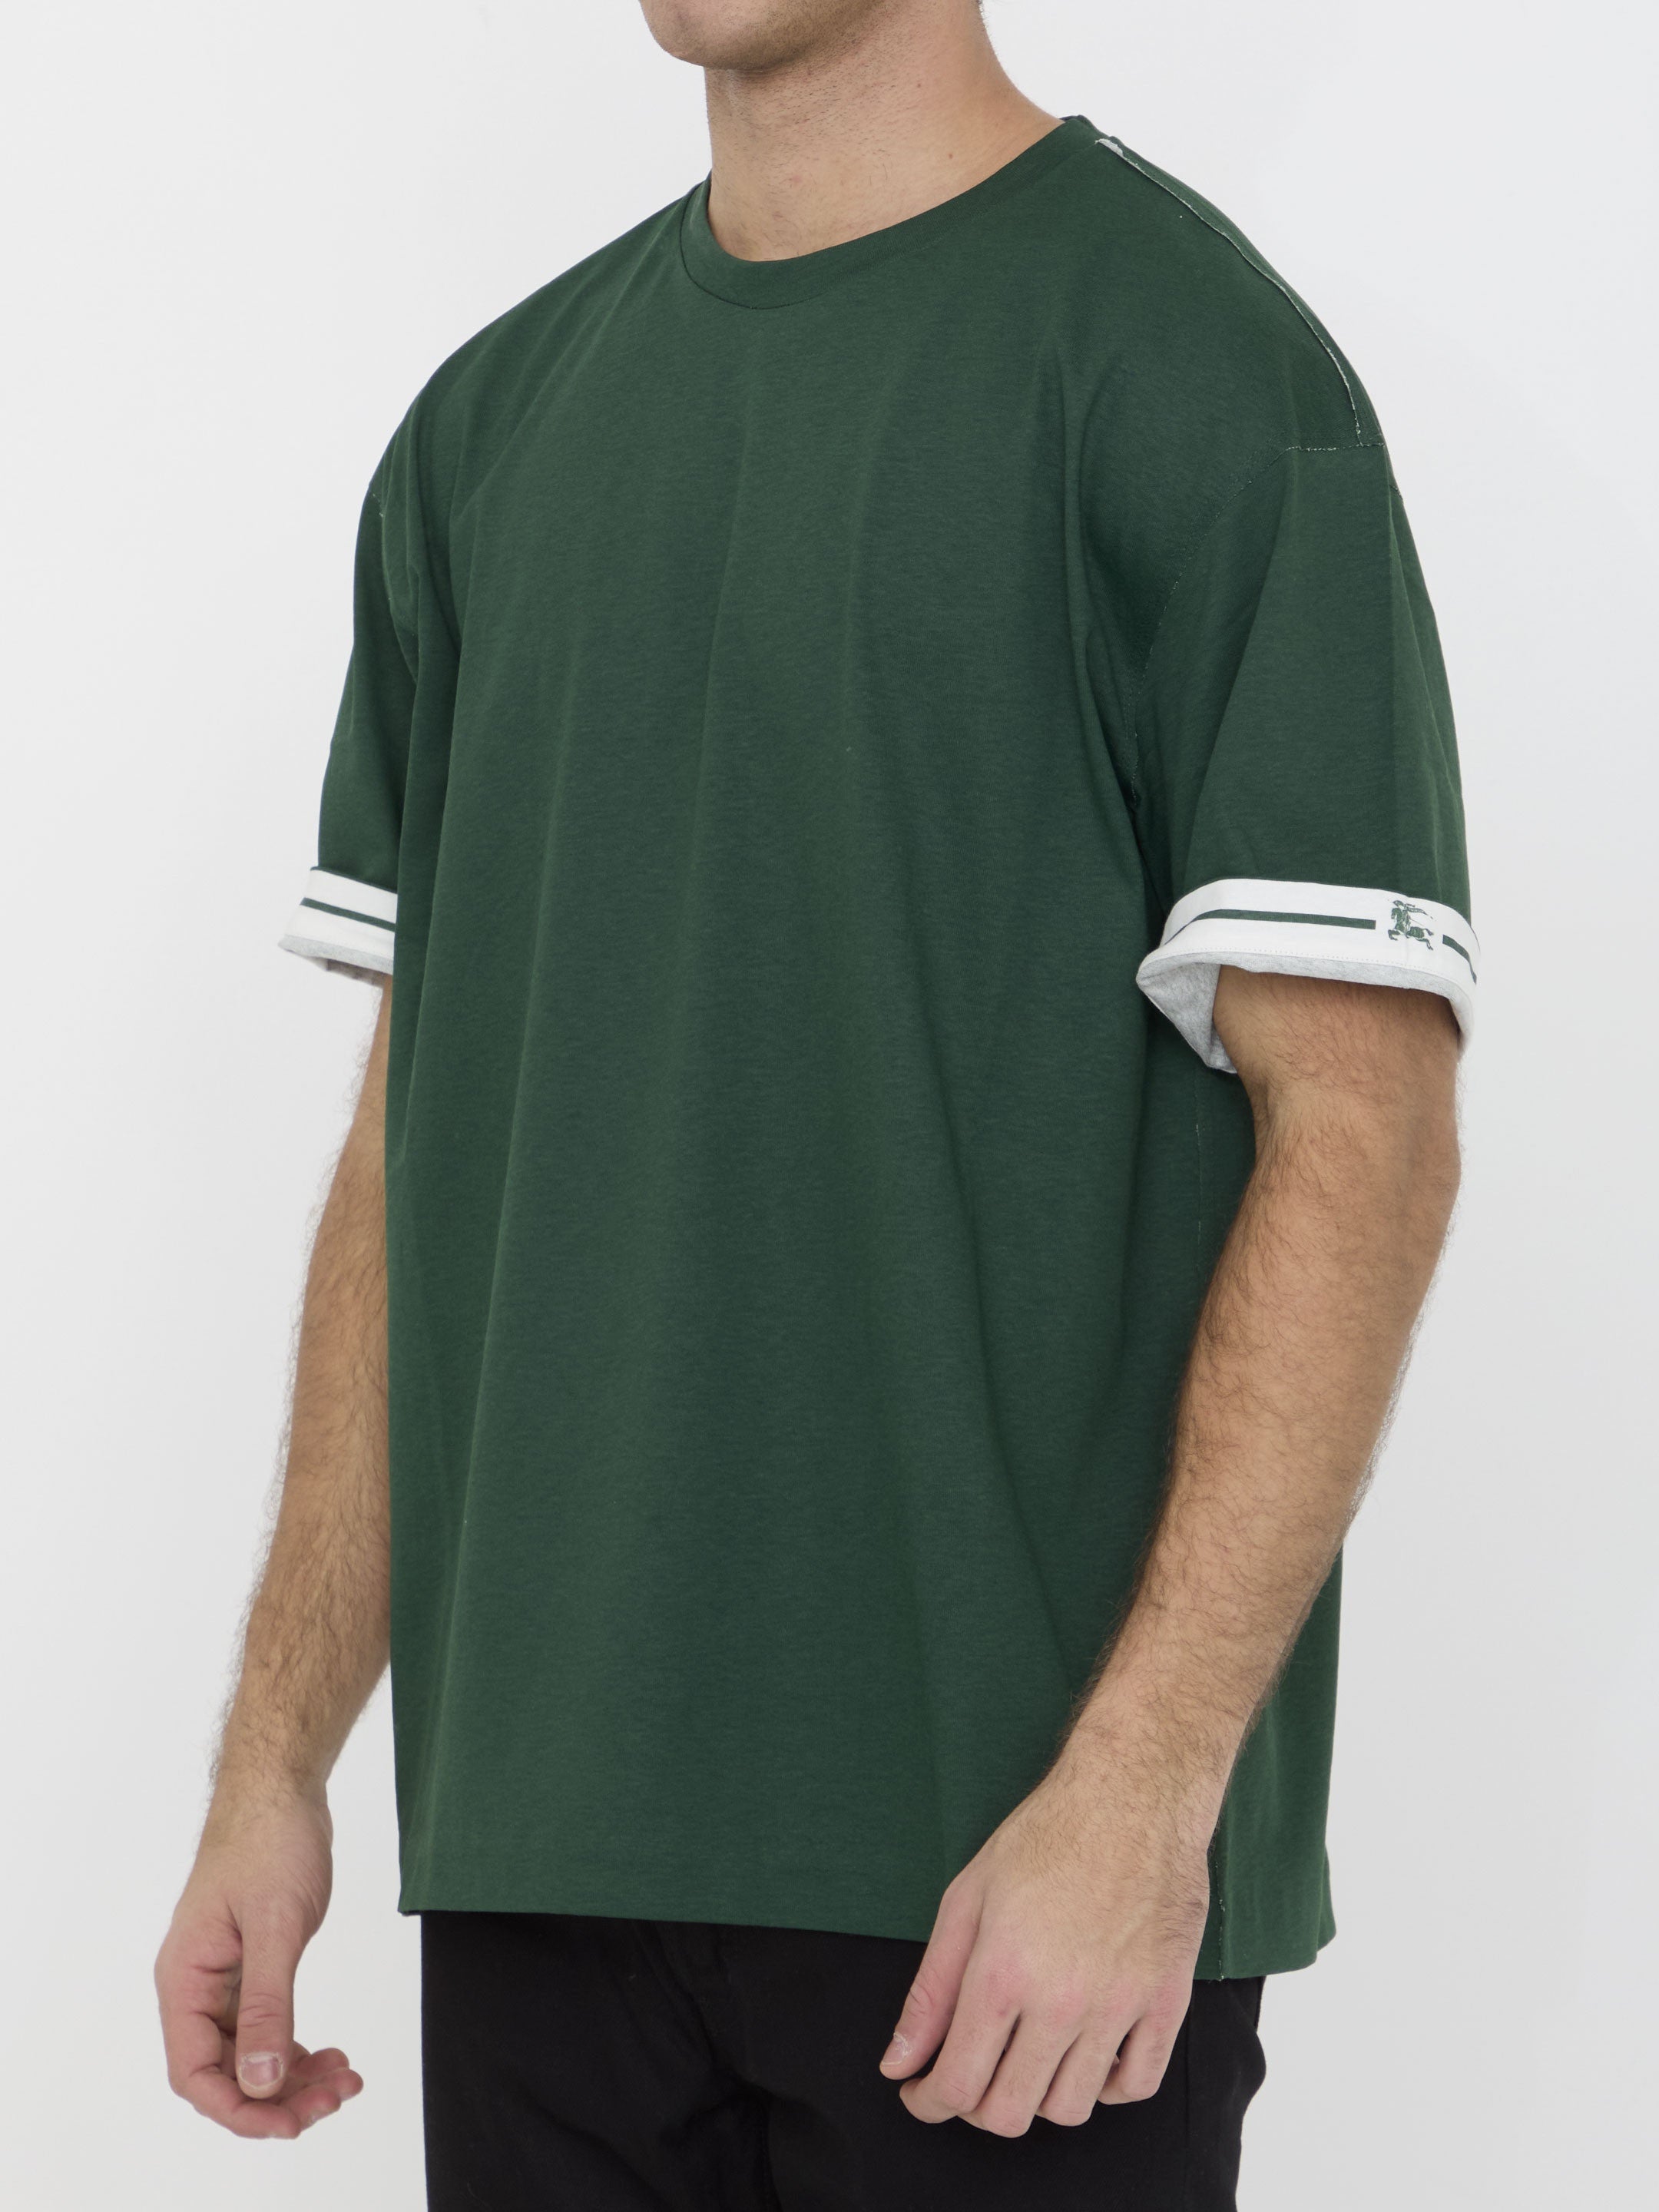 BURBERRY-OUTLET-SALE-Cotton-t-shirt-Shirts-ARCHIVE-COLLECTION-2_9d0d7f14-770b-4d14-8205-587ba2c934fe.jpg